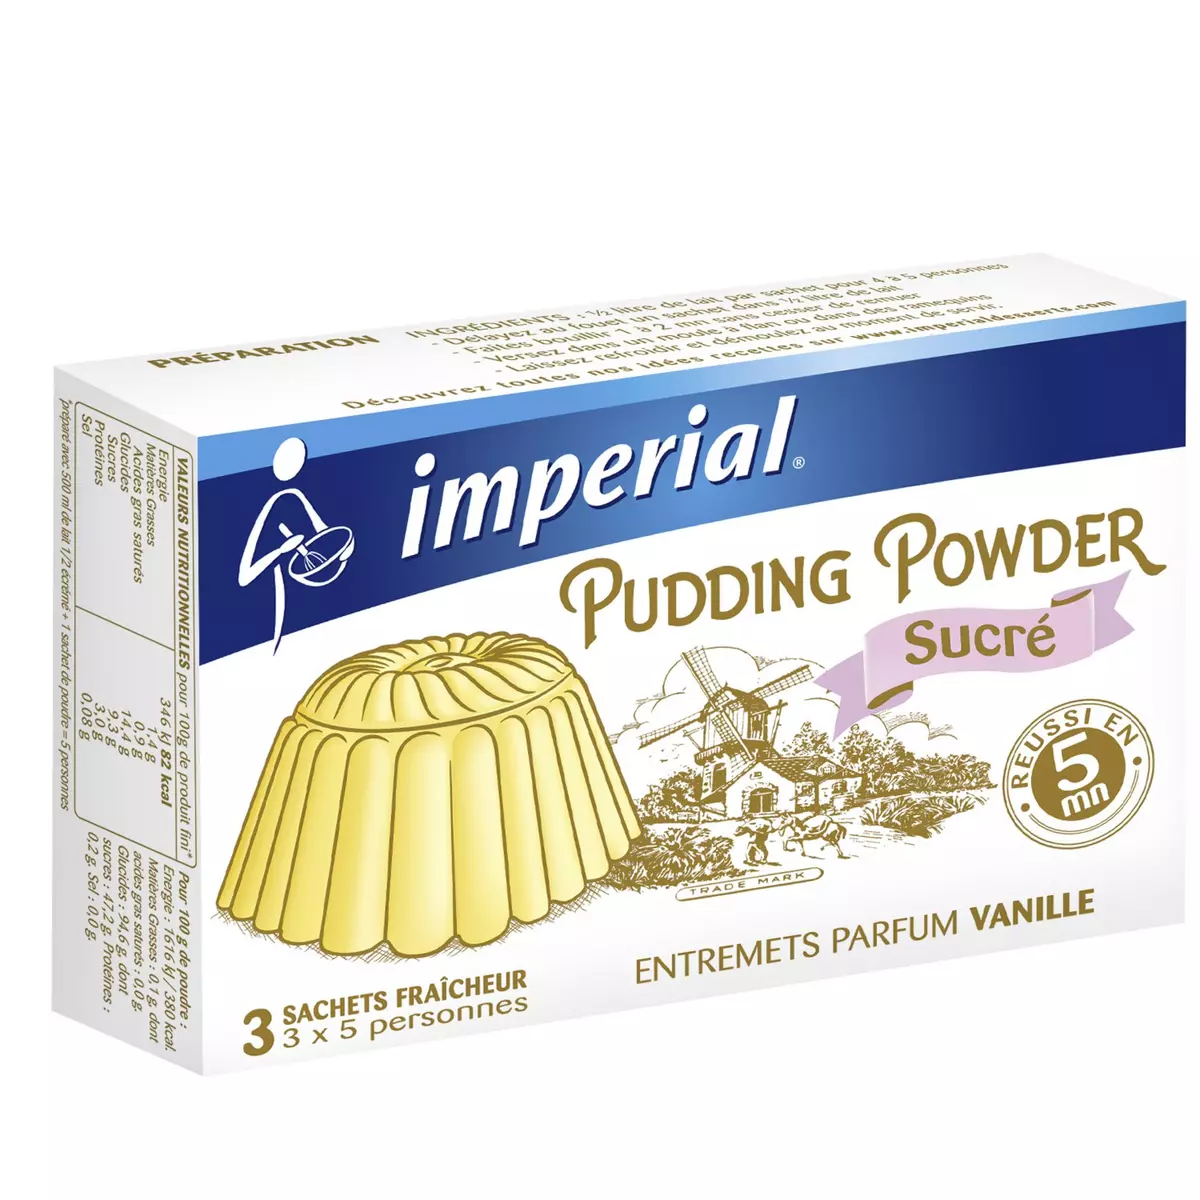 IMPERIAL Pudding powder entremets parfum vanillé 3 sachets de 5 parts 3x60g